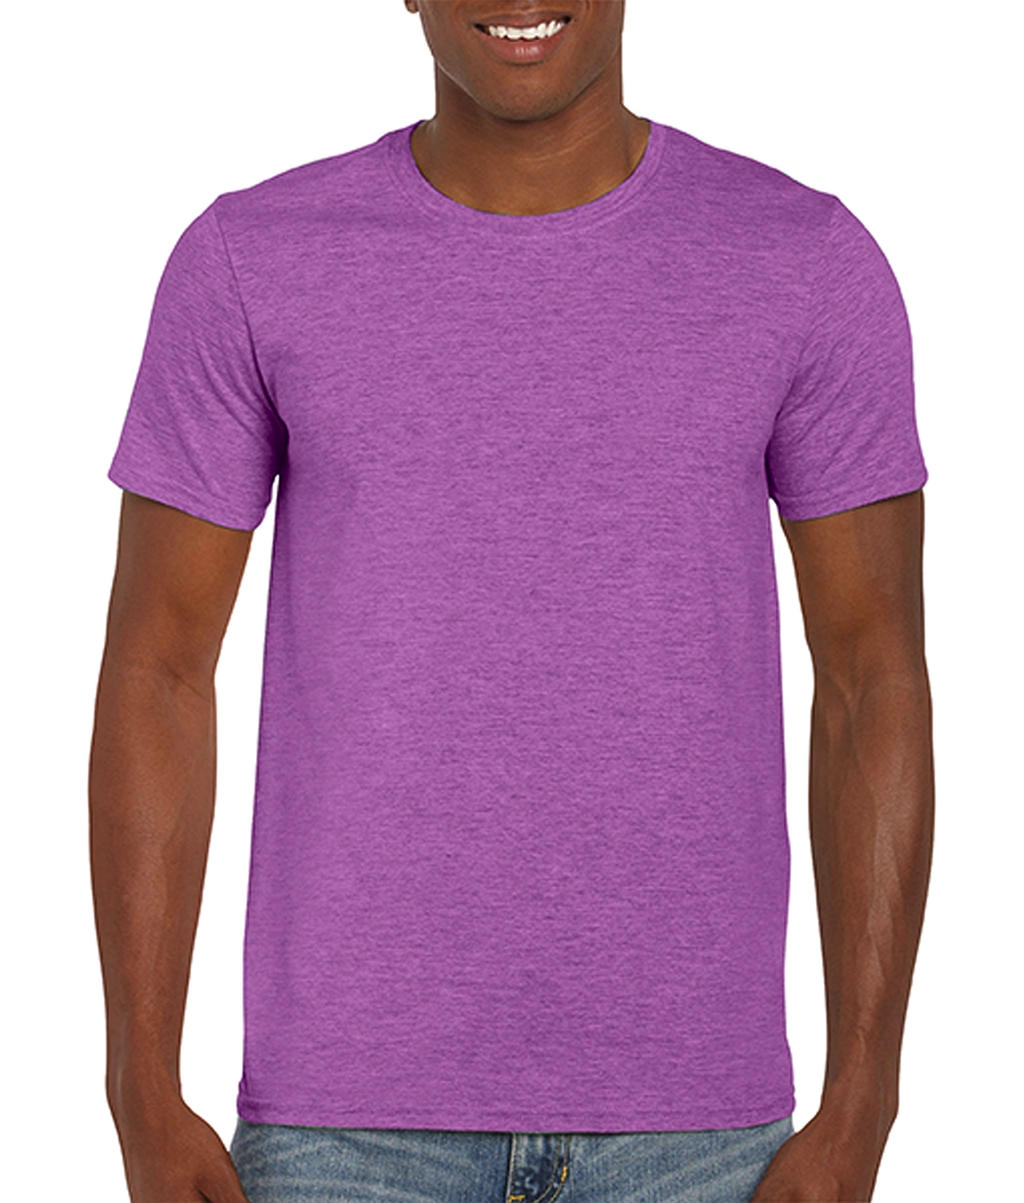 Softstyle® Ring Spun T-Shirt zum Besticken und Bedrucken in der Farbe Heather Radiant Orchid mit Ihren Logo, Schriftzug oder Motiv.